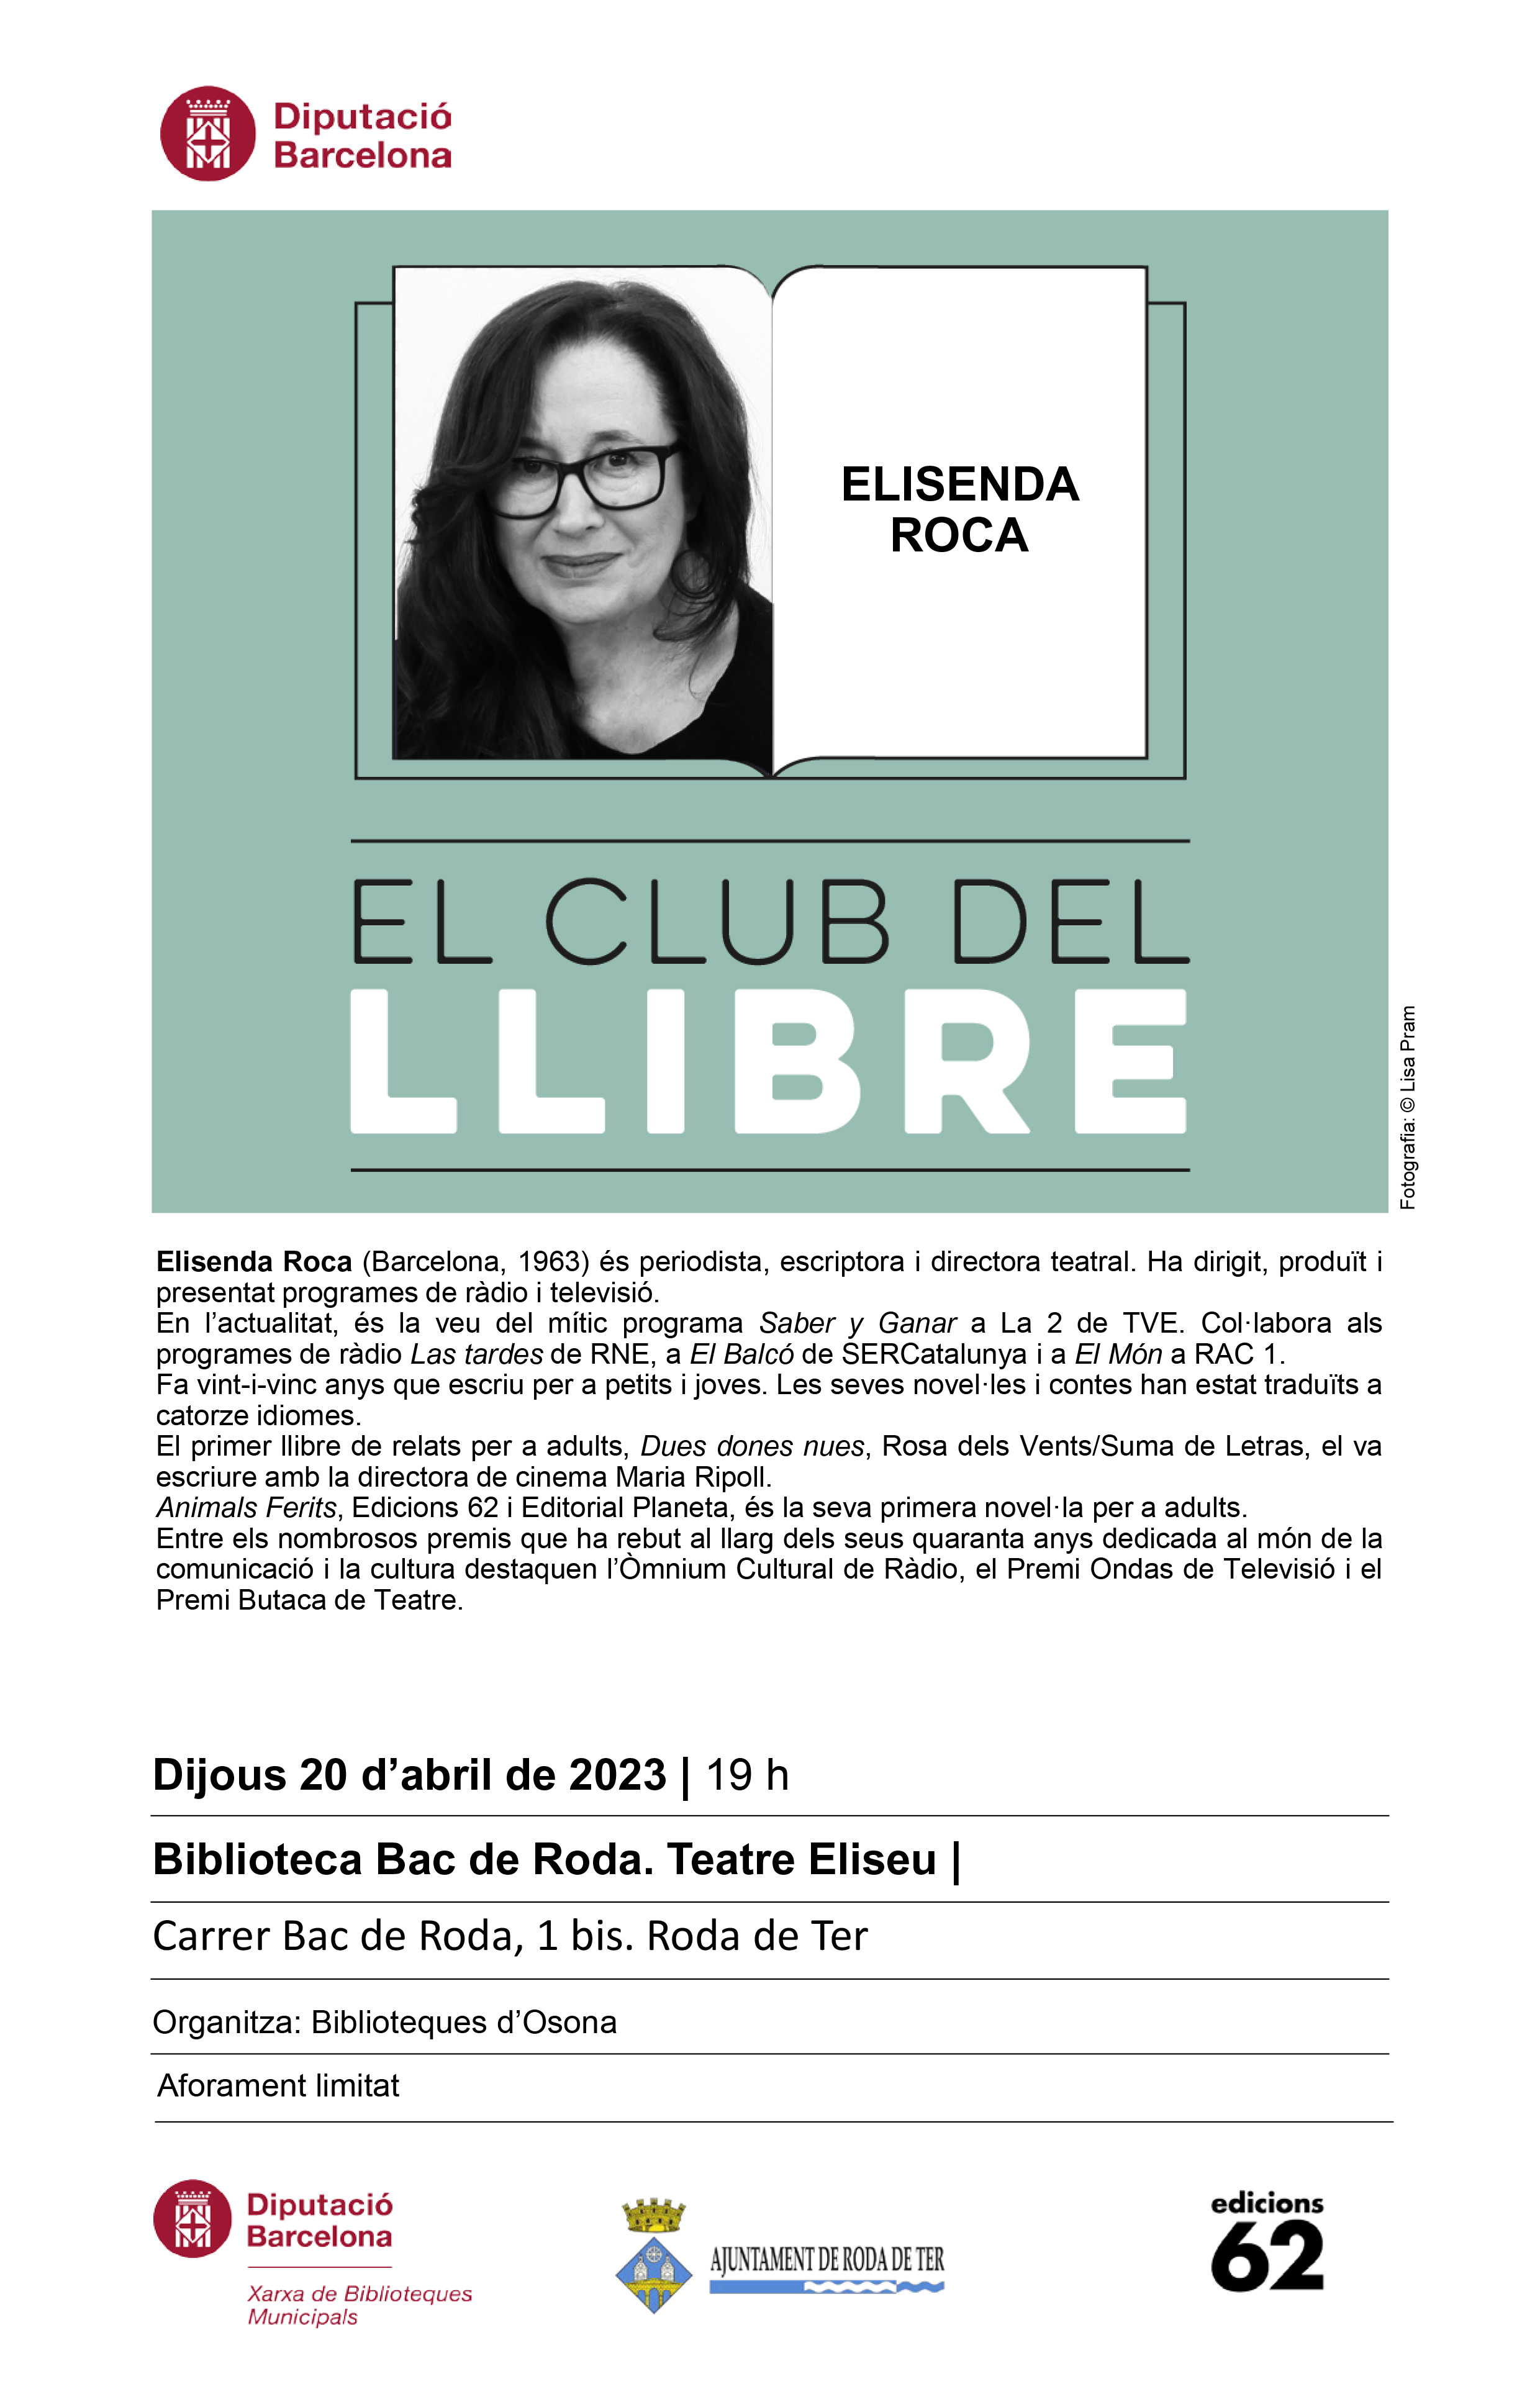  Sant Jordi | Club del llibre amb Elisenda Roca